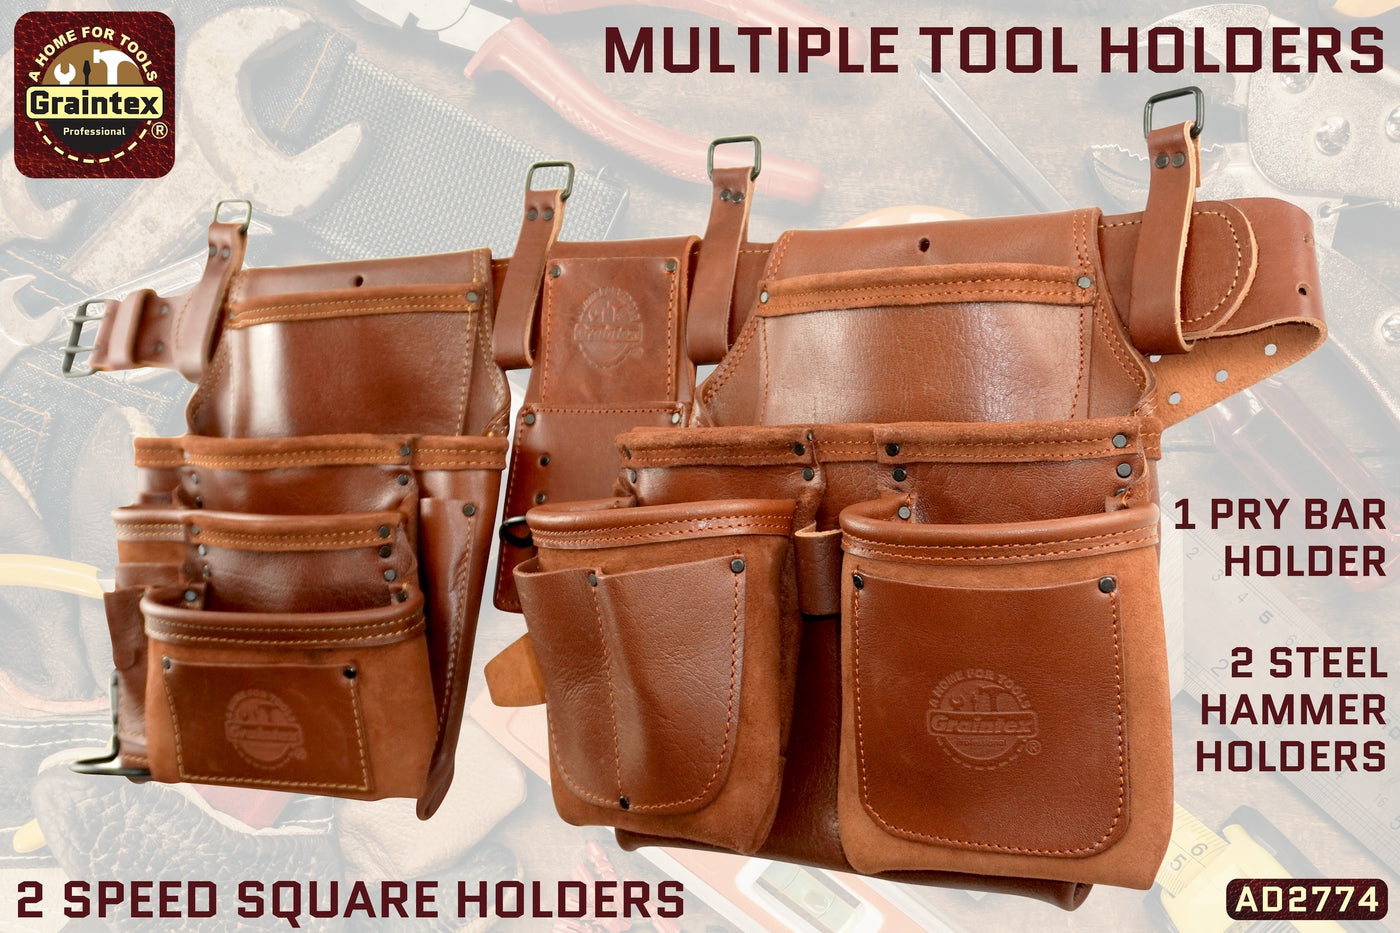 AD2774 :: 4 Piece 18 Pocket Framer's Tool Belt Combo Set Ambassador Series Chestnut Brown Color Top Grain Leather